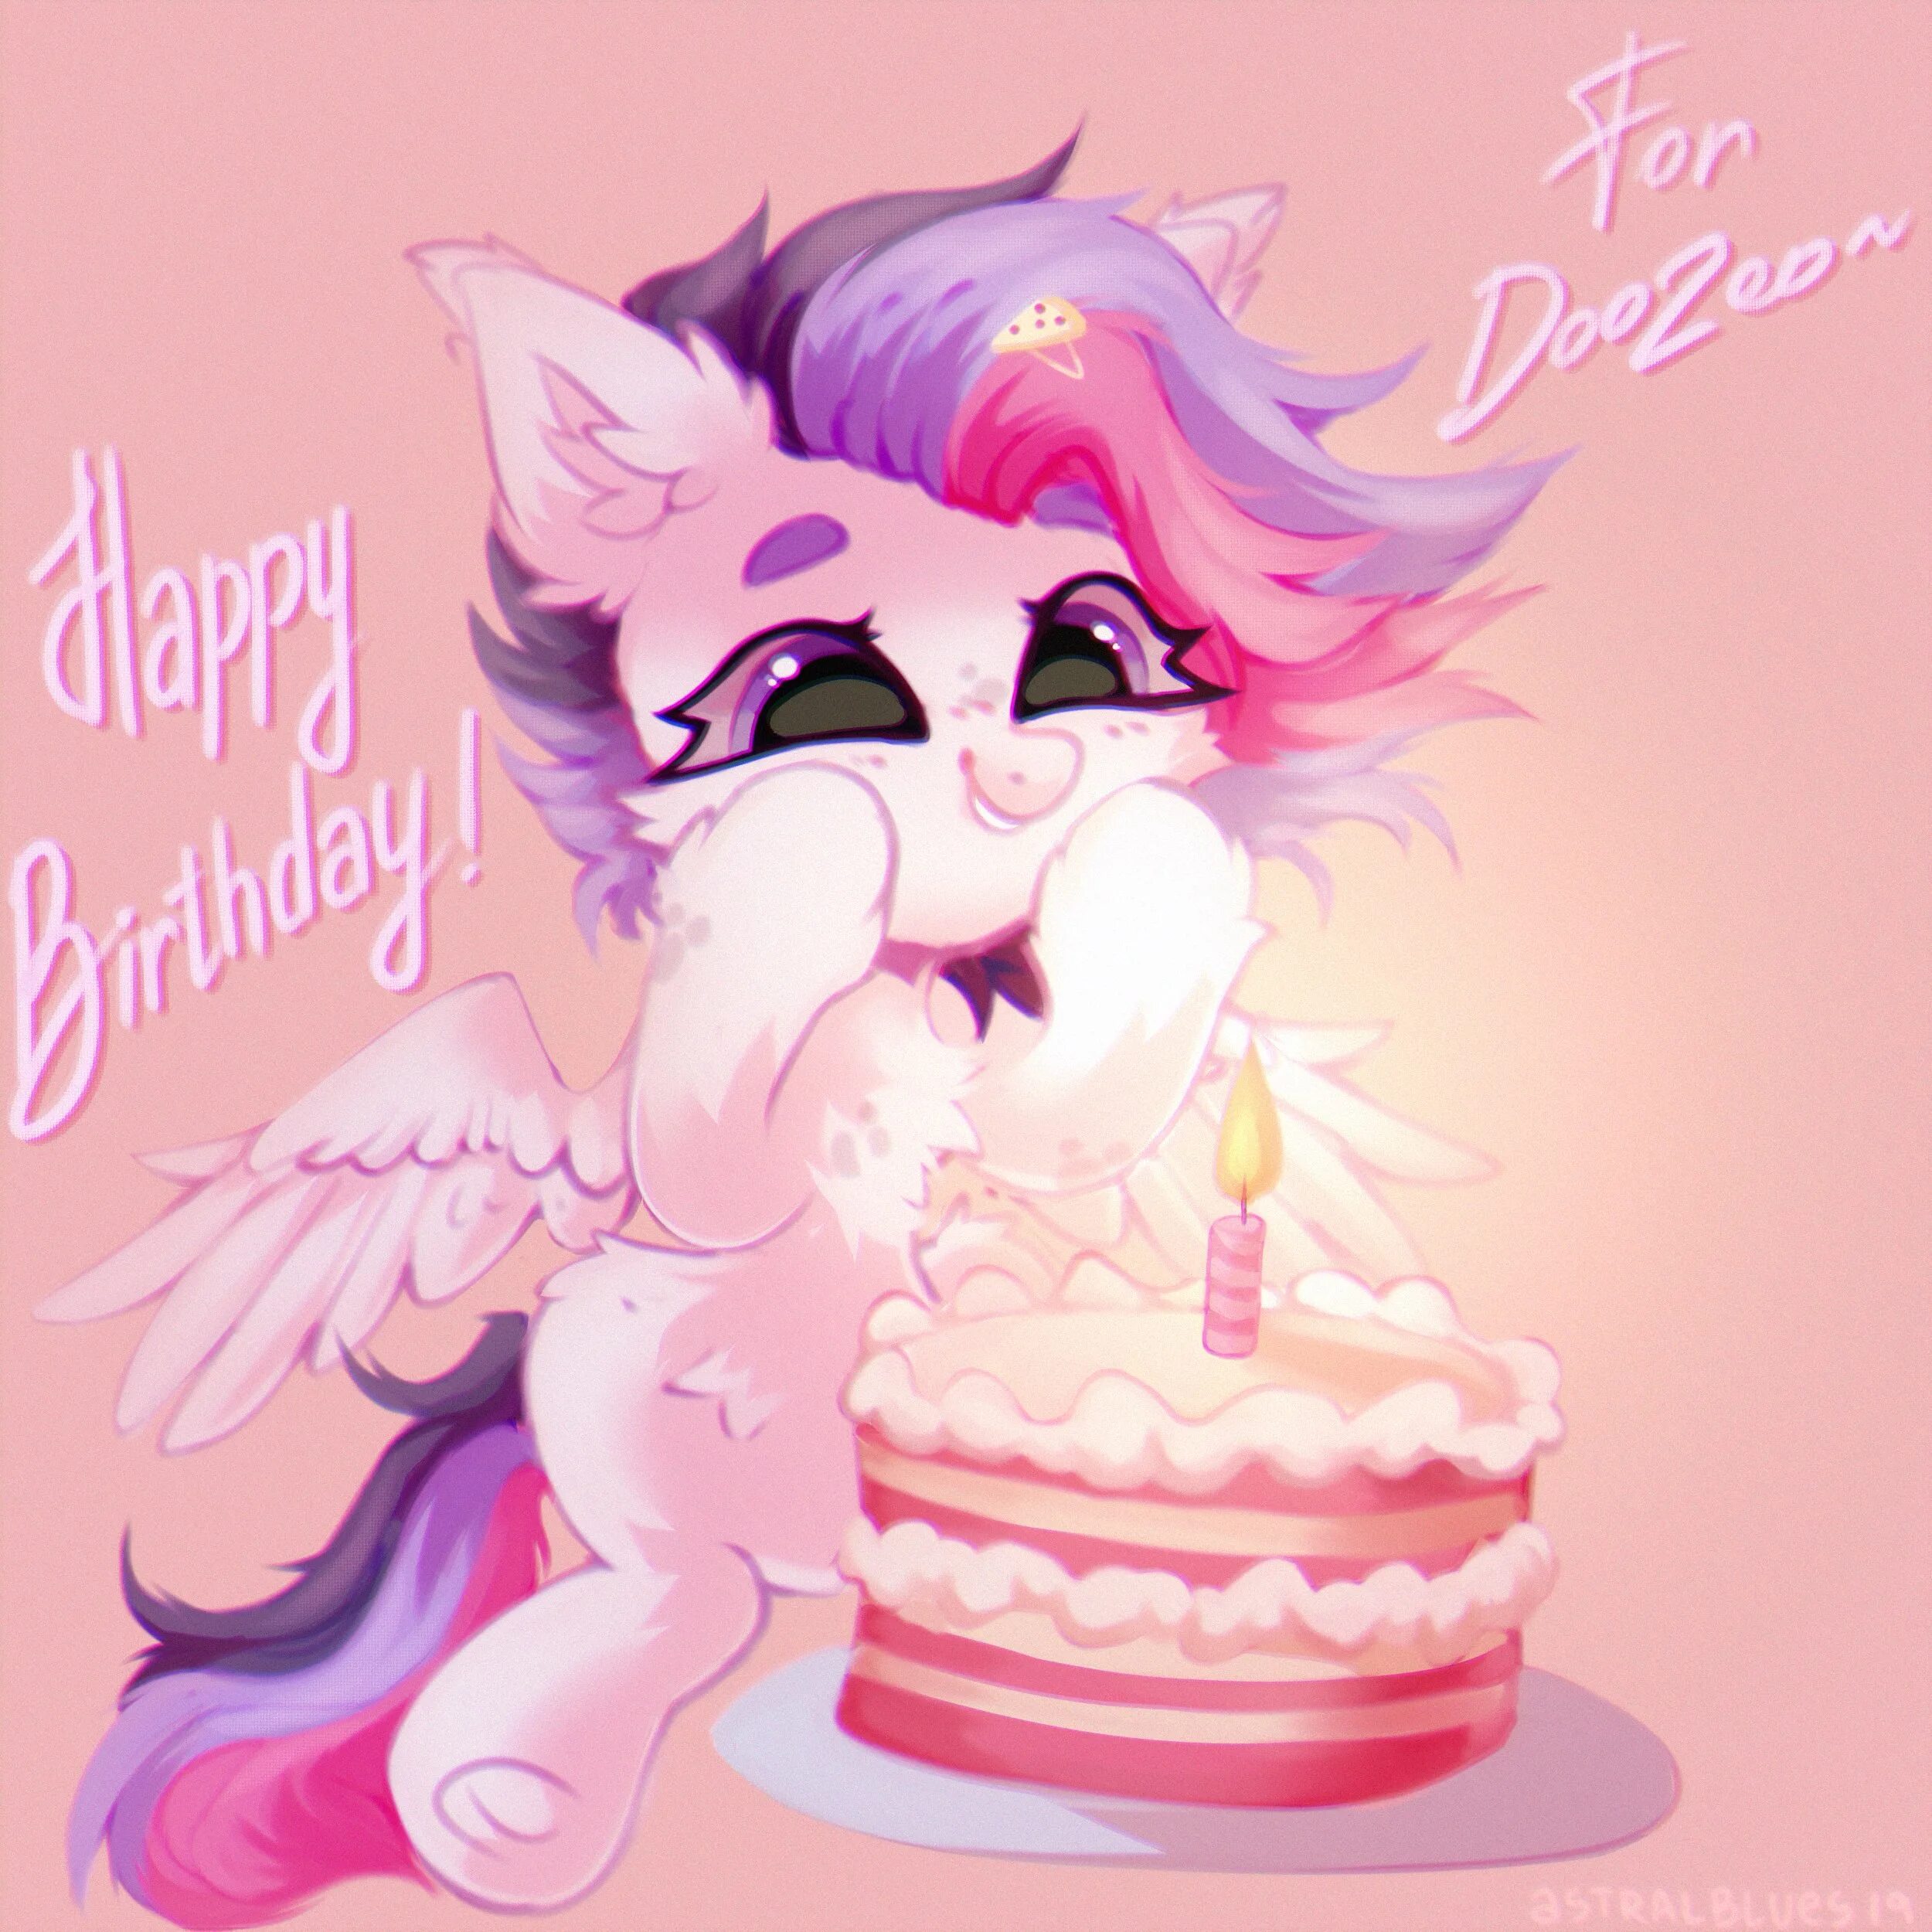 Литл пони день рождение. С днем рождения пони. Открытка пони с днем рождения. Пони день рождения арт. Пони арты с днём рождения.